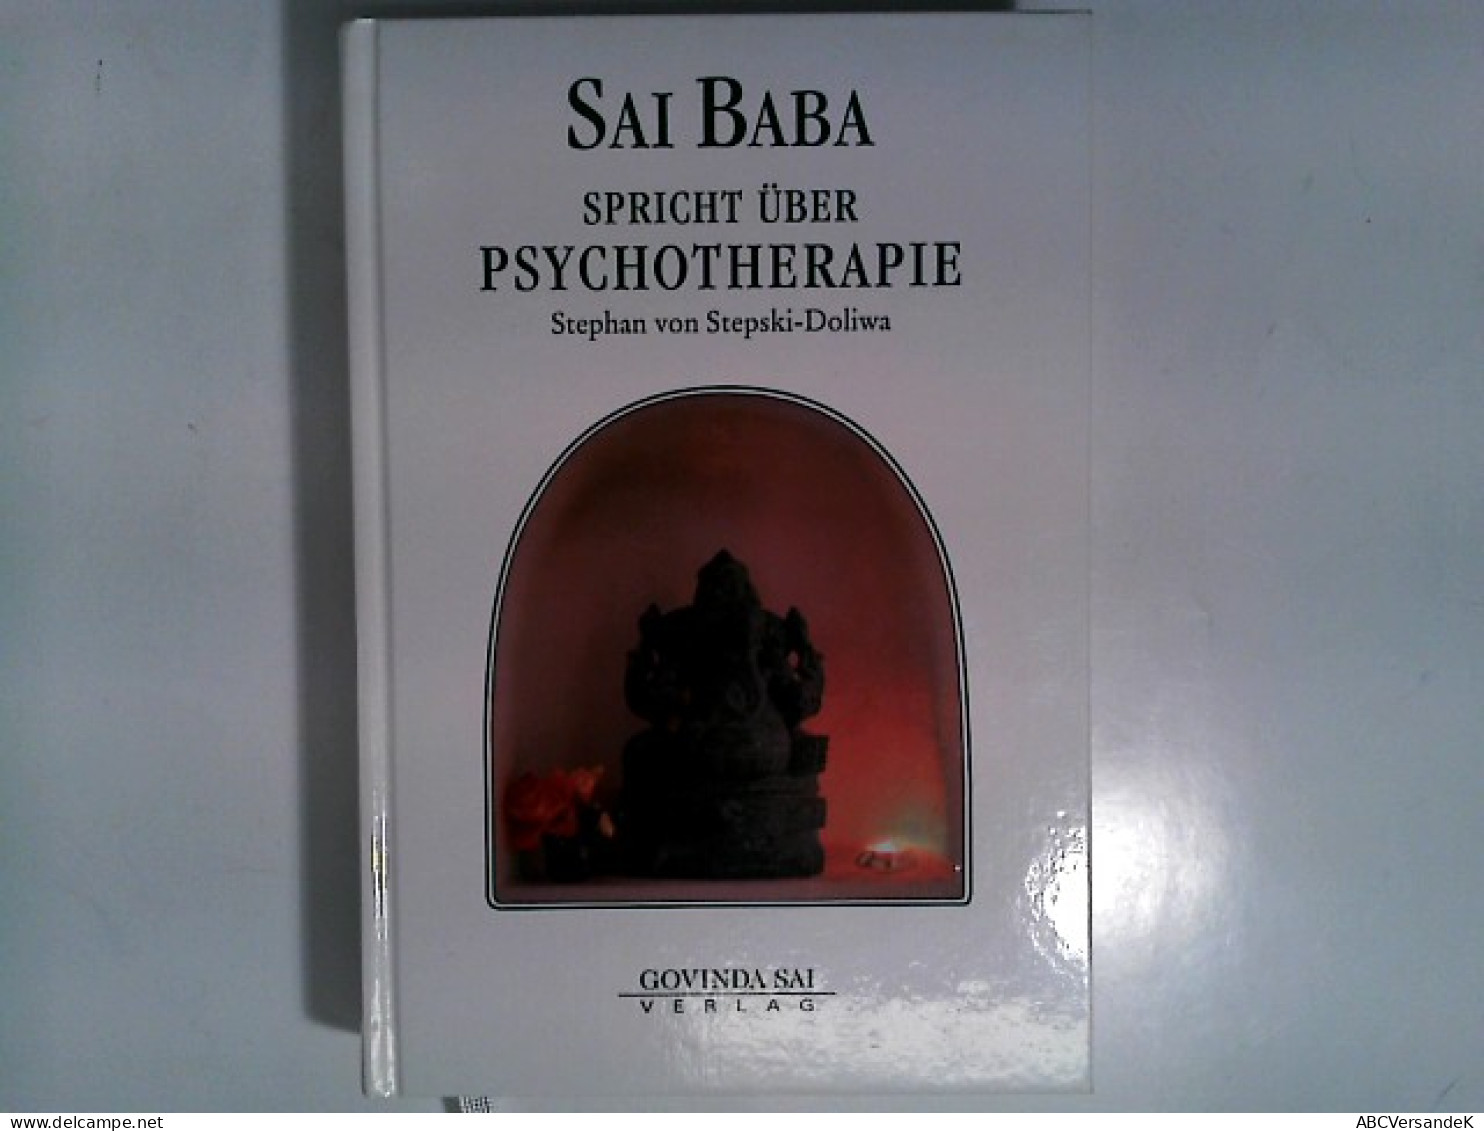 Sai Baba Spricht über Psychotherapie - Medizin & Gesundheit